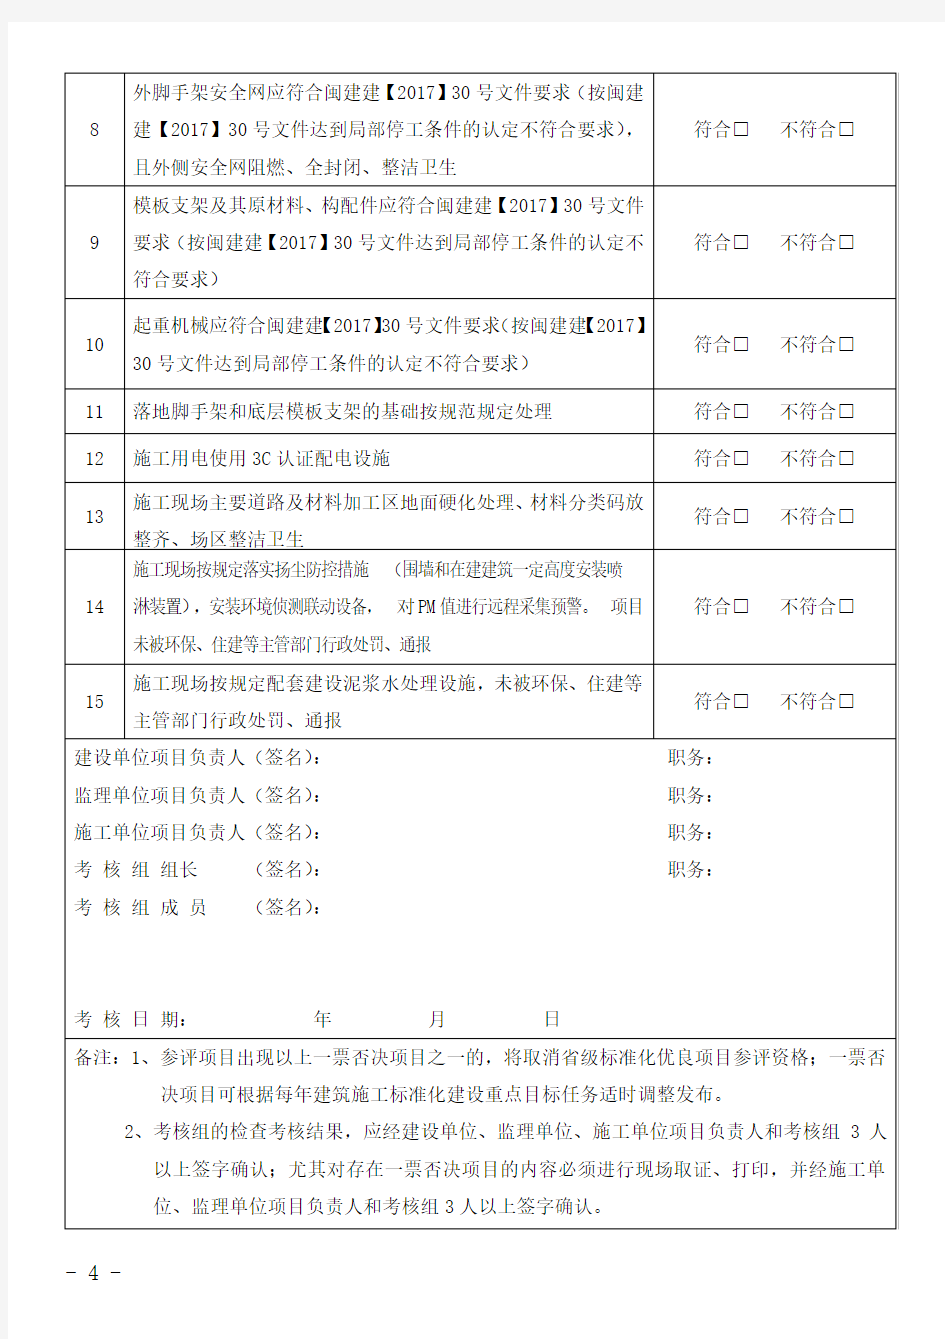 福建省省级标准化优良项目考评一票否决项目表(2018年版)